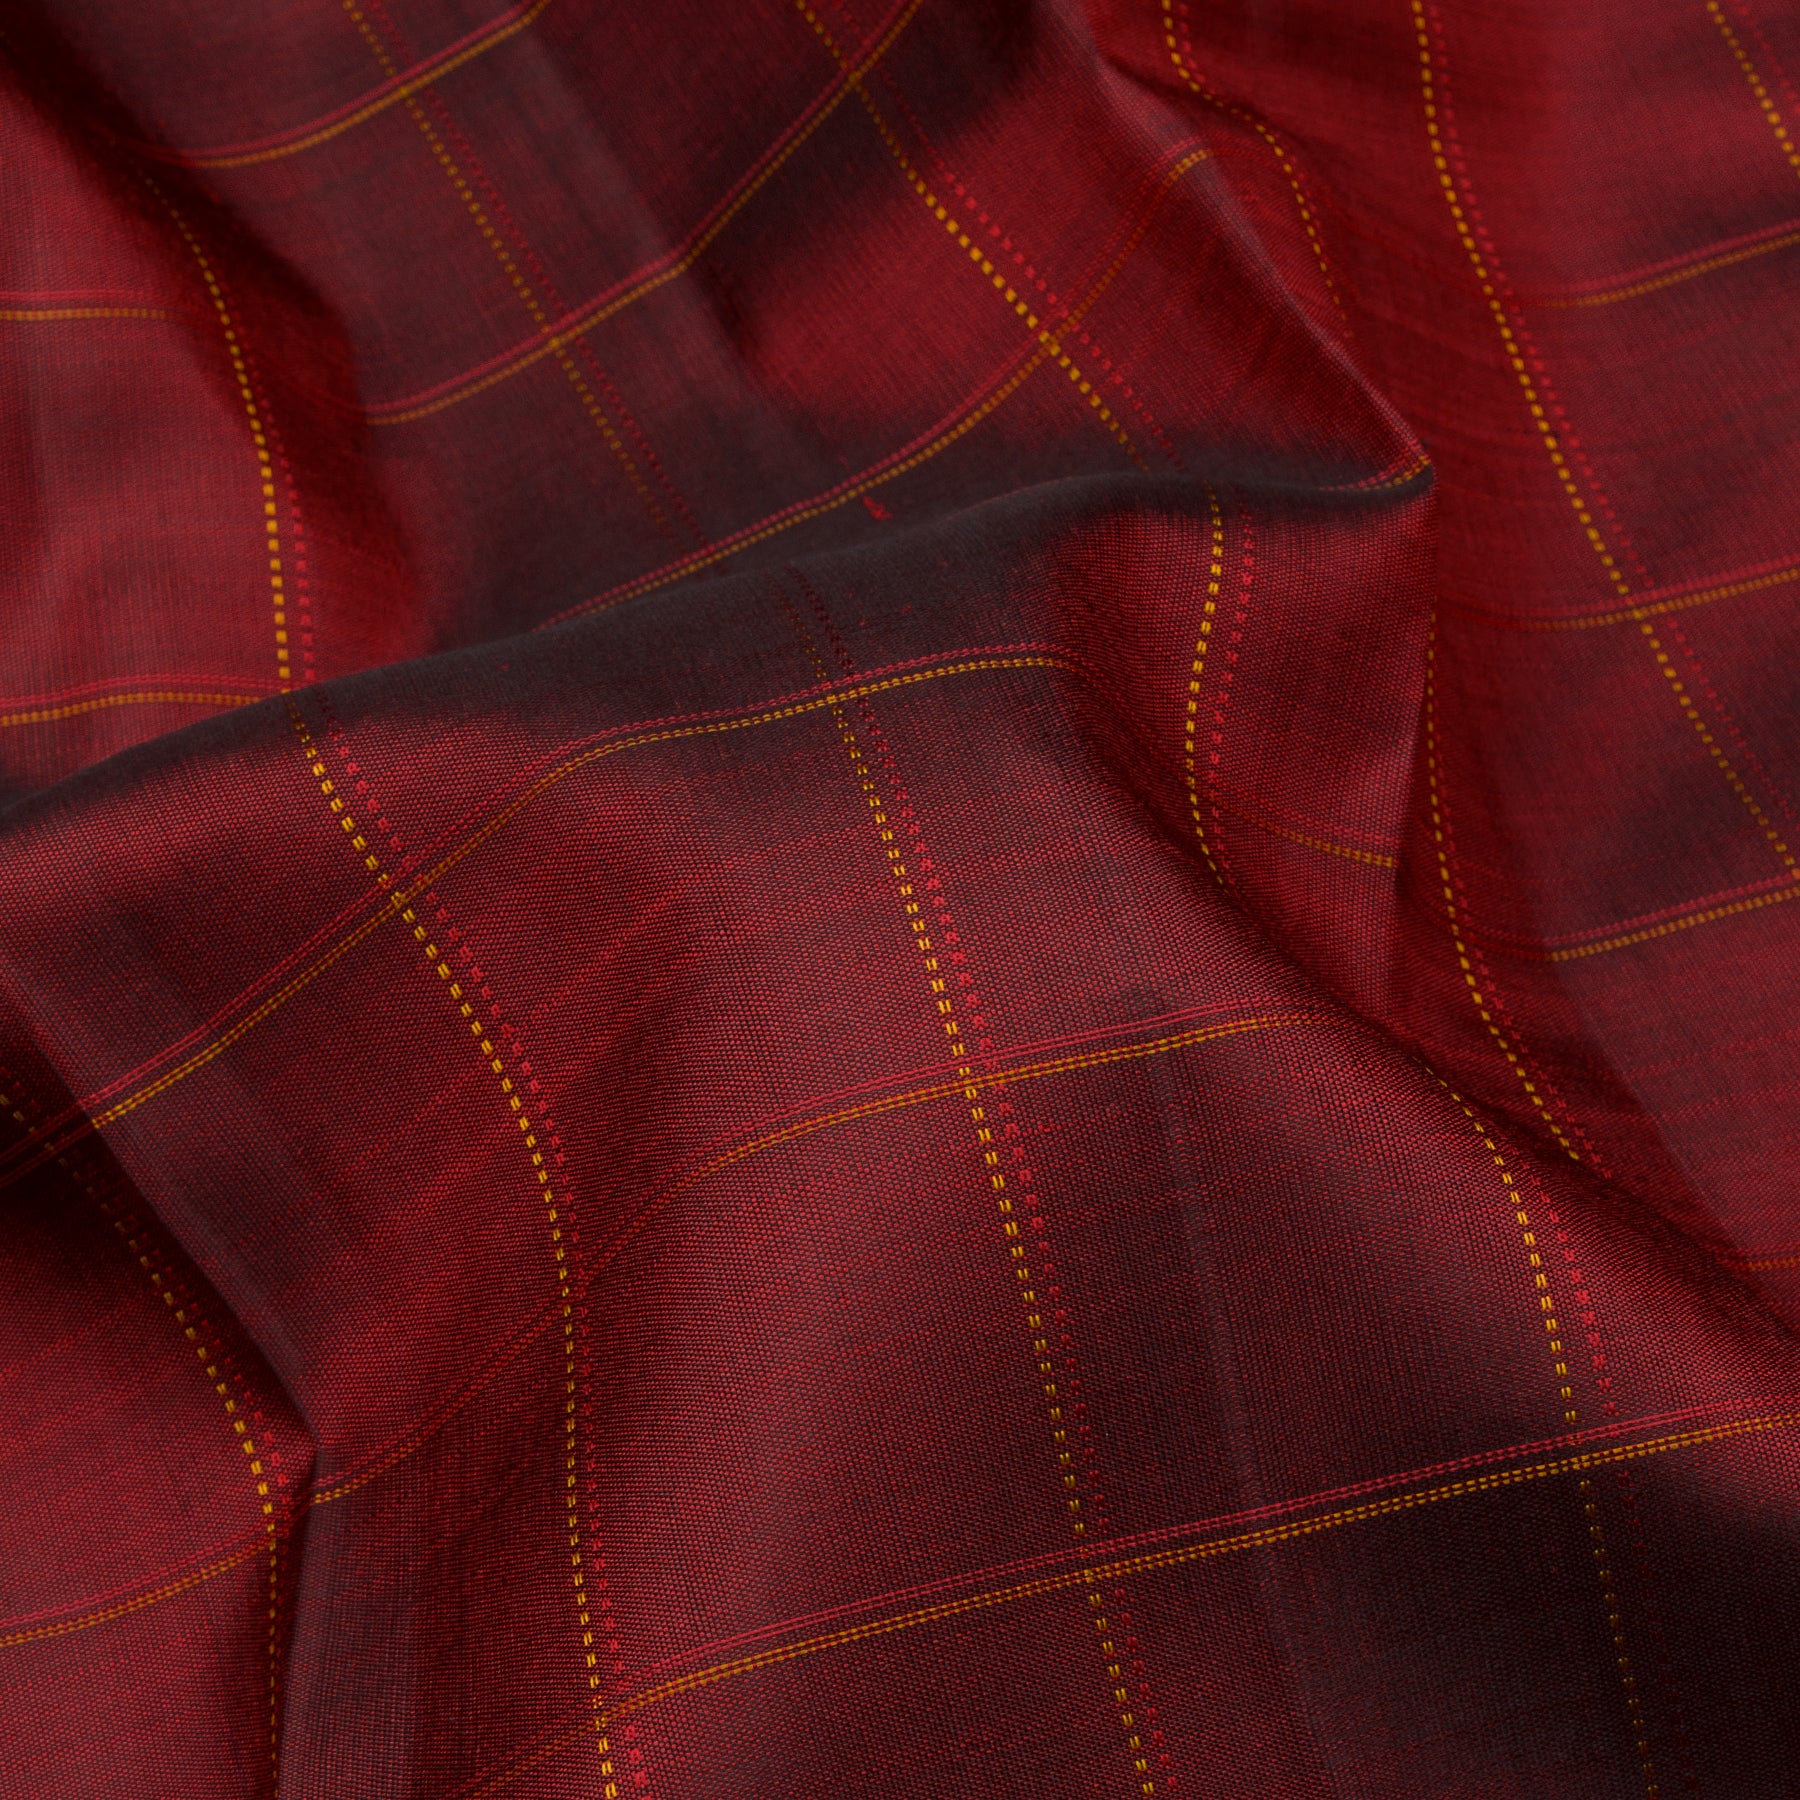 Kanakavalli Kanjivaram Silk Sari 23-599-HS001-13934 - Fabric View